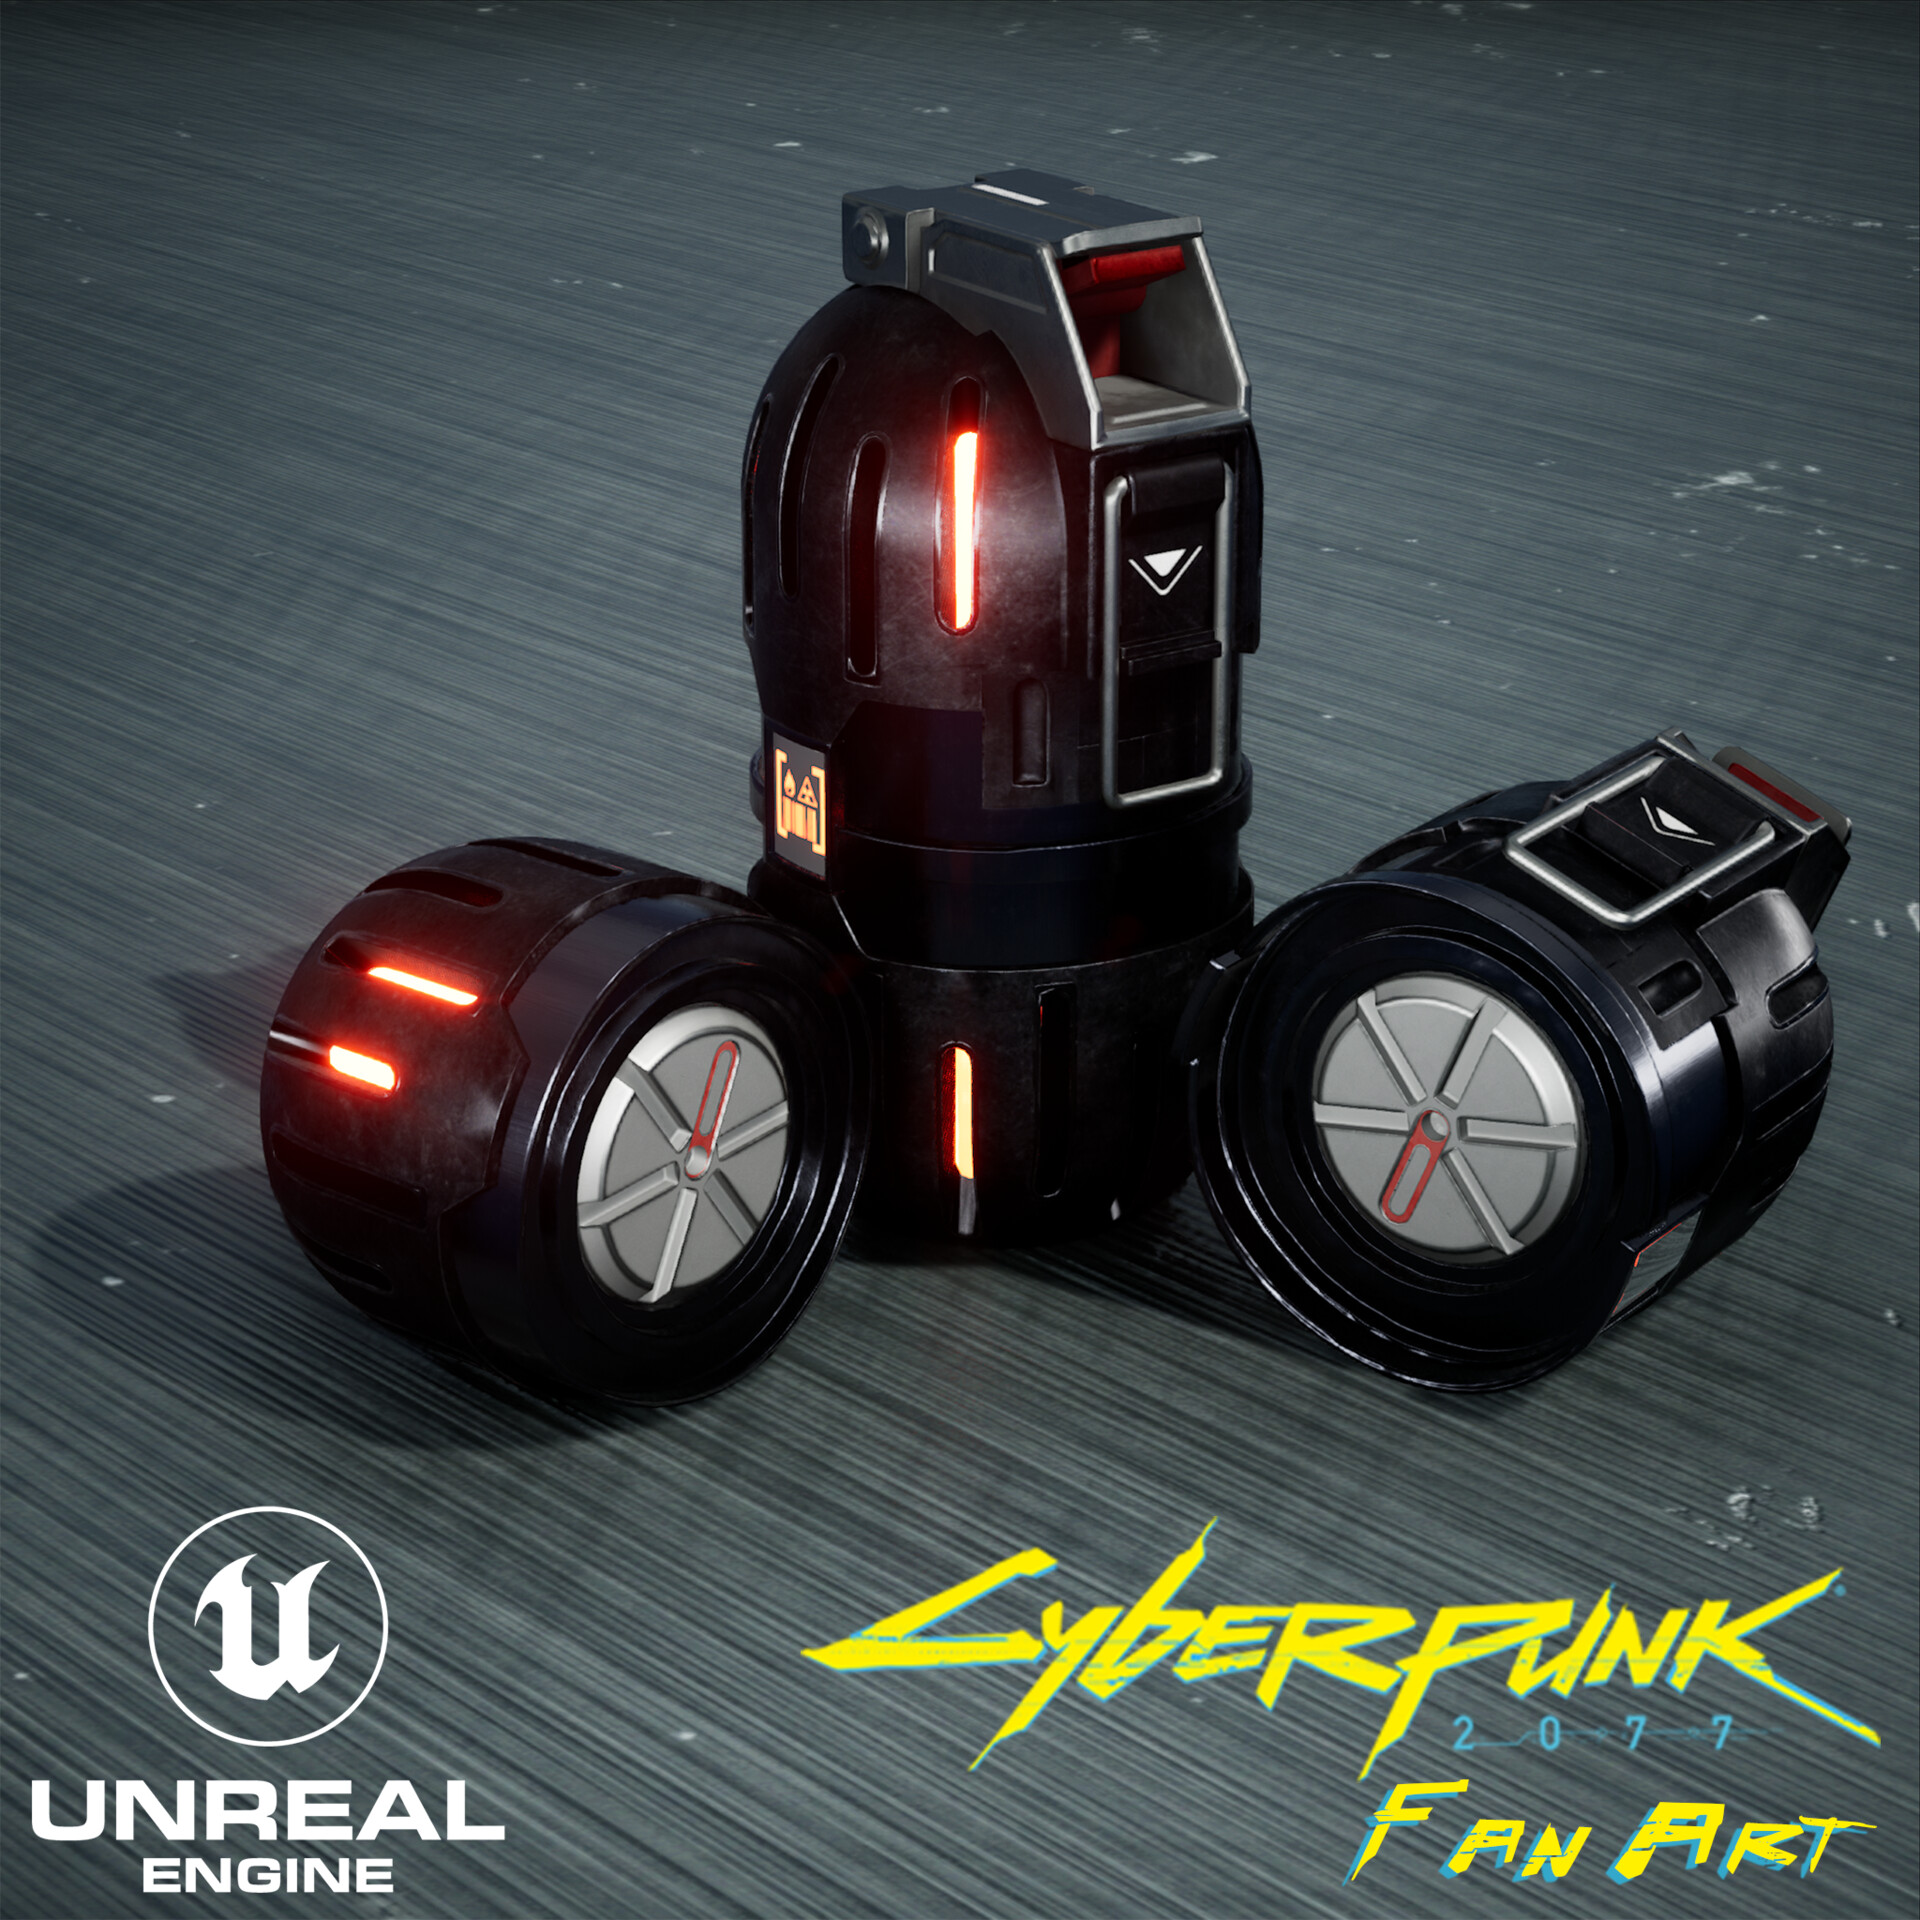 Cyberpunk 2077 Grenade Fan Art